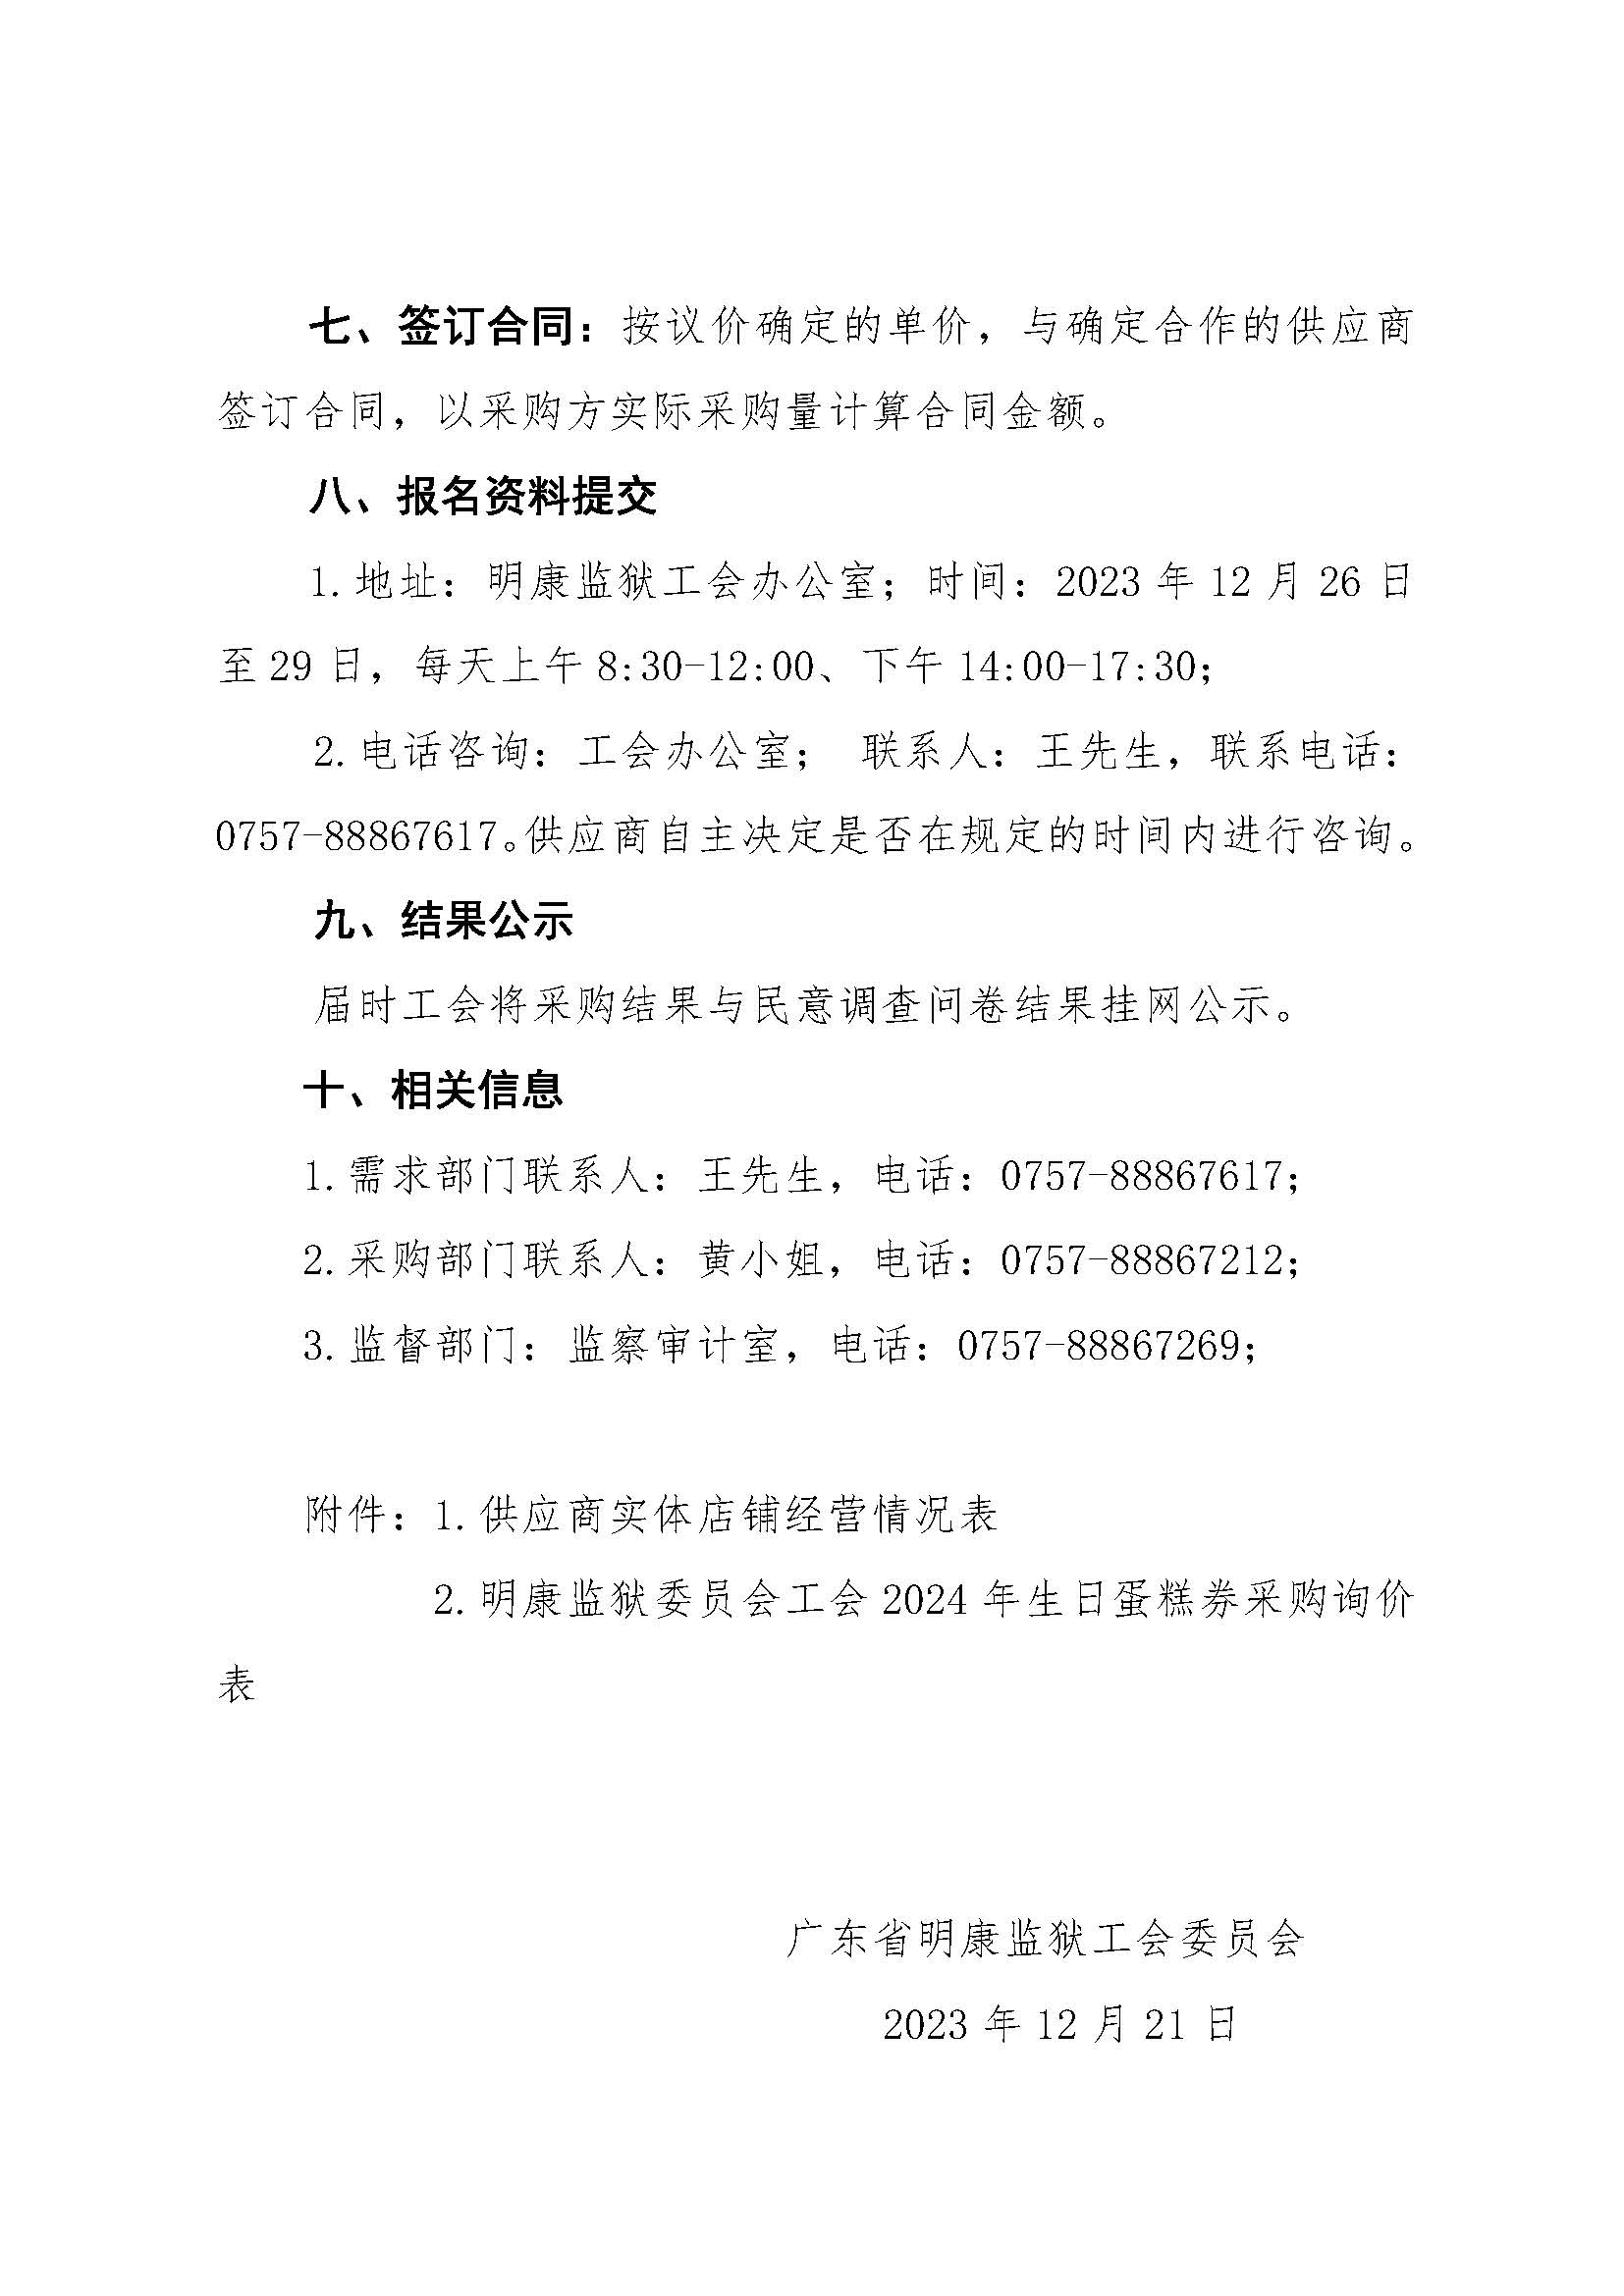 明康监狱工会2024年会员生日蛋糕券采购公告_页面_4.jpg